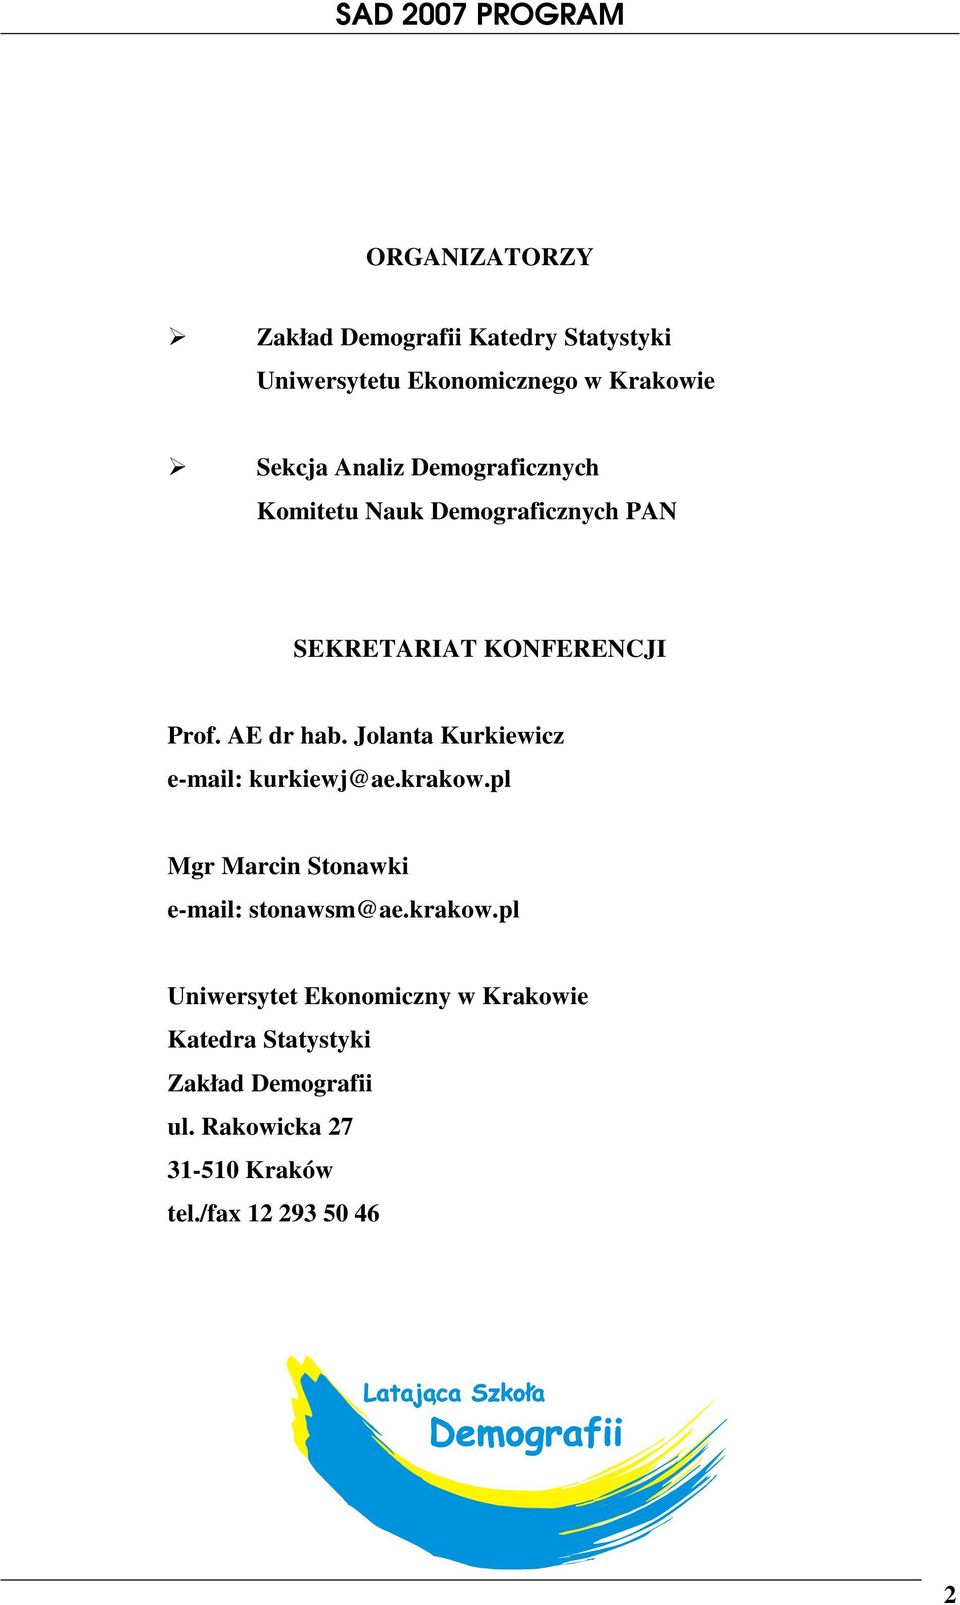 Jolanta Kurkiewicz e-mail: kurkiewj@ae.krakow.